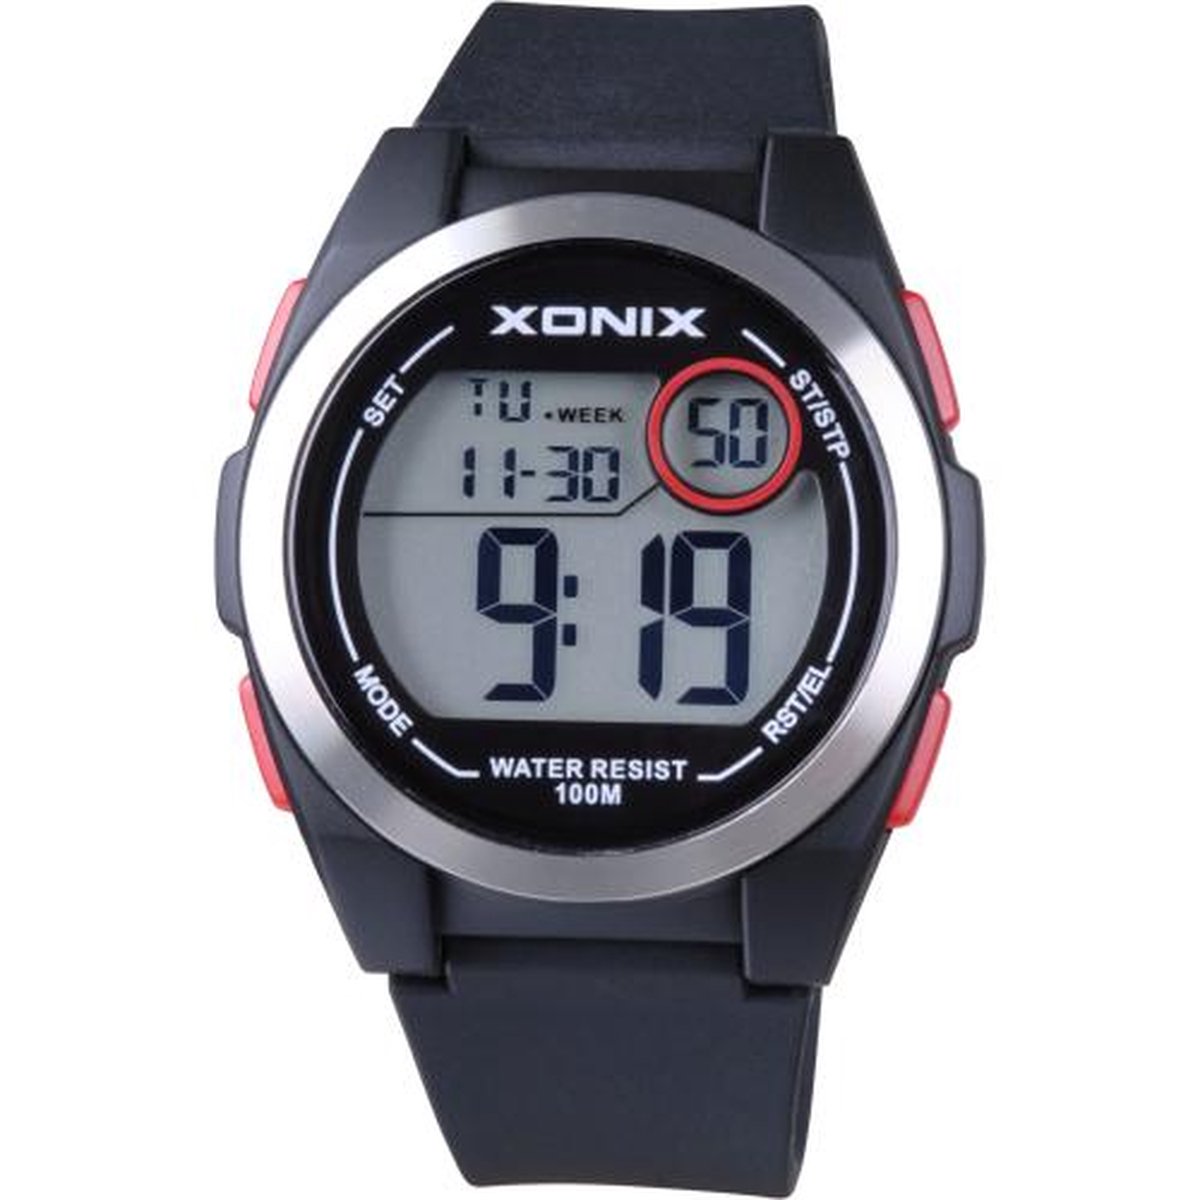 Xonix KQ-B06 - Horloge - Digitaal - Heren - Mannen - Siliconen band - ABS - Cijfers - Achtergrondverlichting - Alarm - Start-Stop - Chronograaf - Tweede tijdzone - Waterdicht - 10 ATM - Zwart - Rood - Zilverkleurig